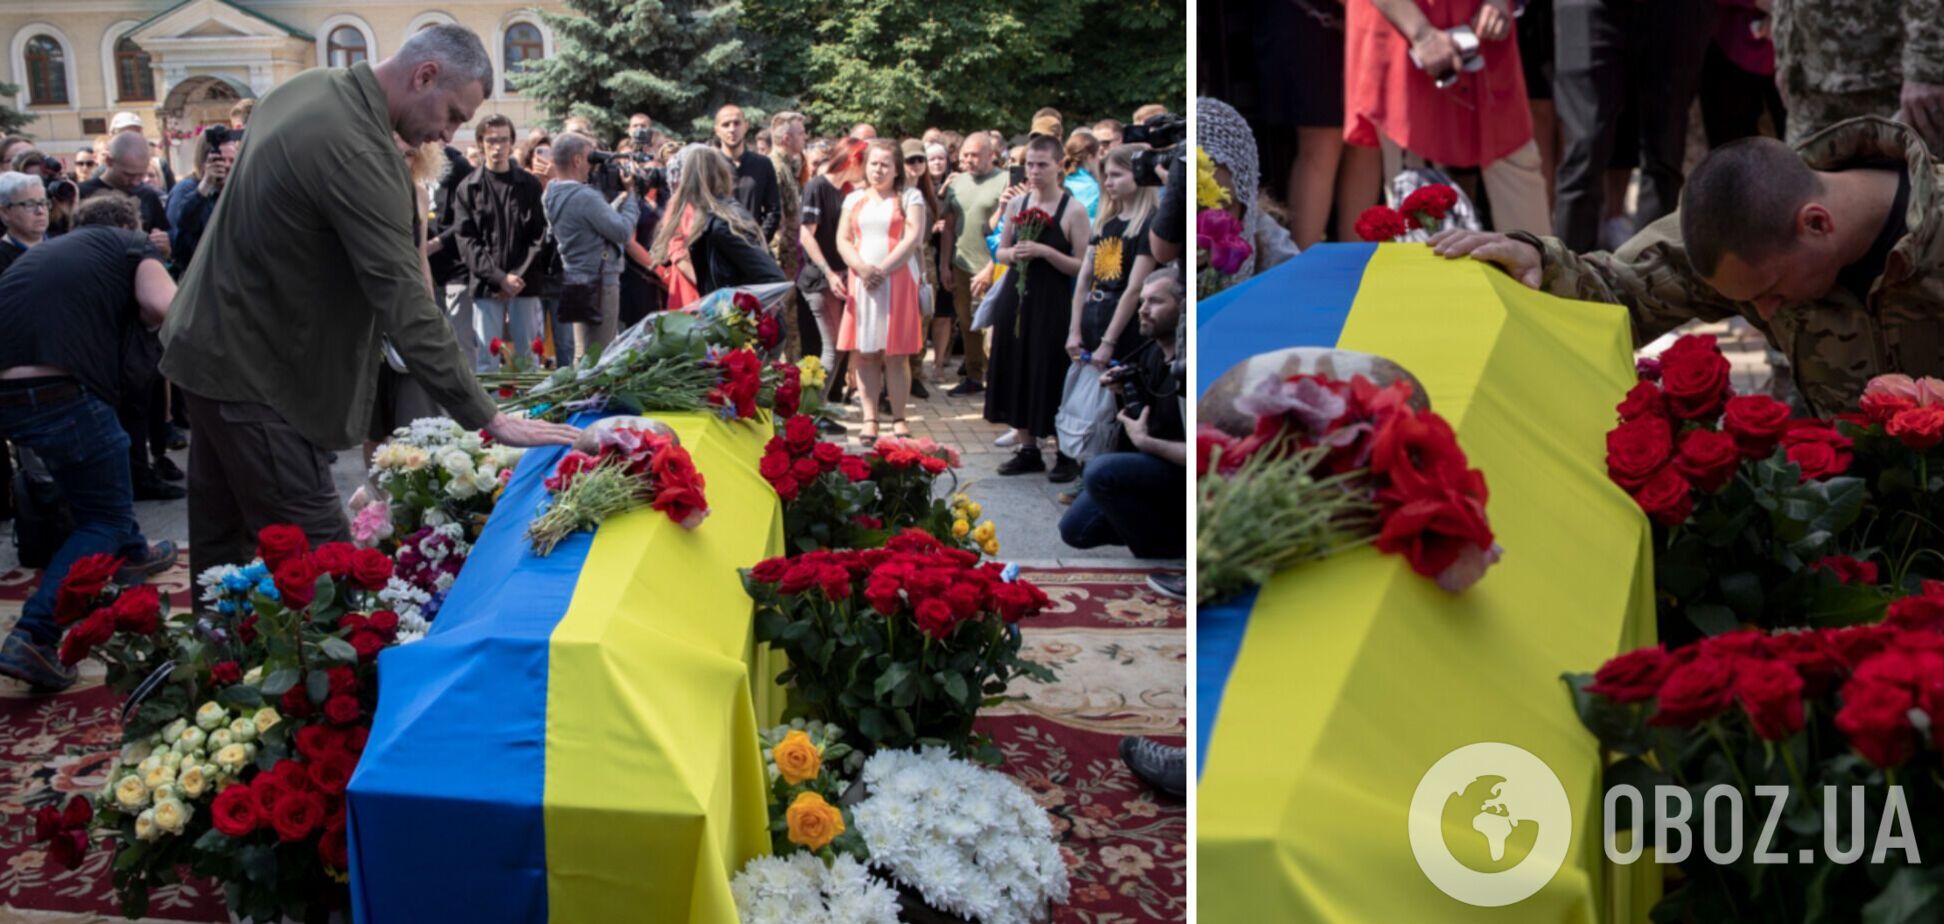 Кличко: Сумний день для Києва та України. Прощання з Романом Ратушним. Саме такі молоді люди, як він – майбутнє сильної країни